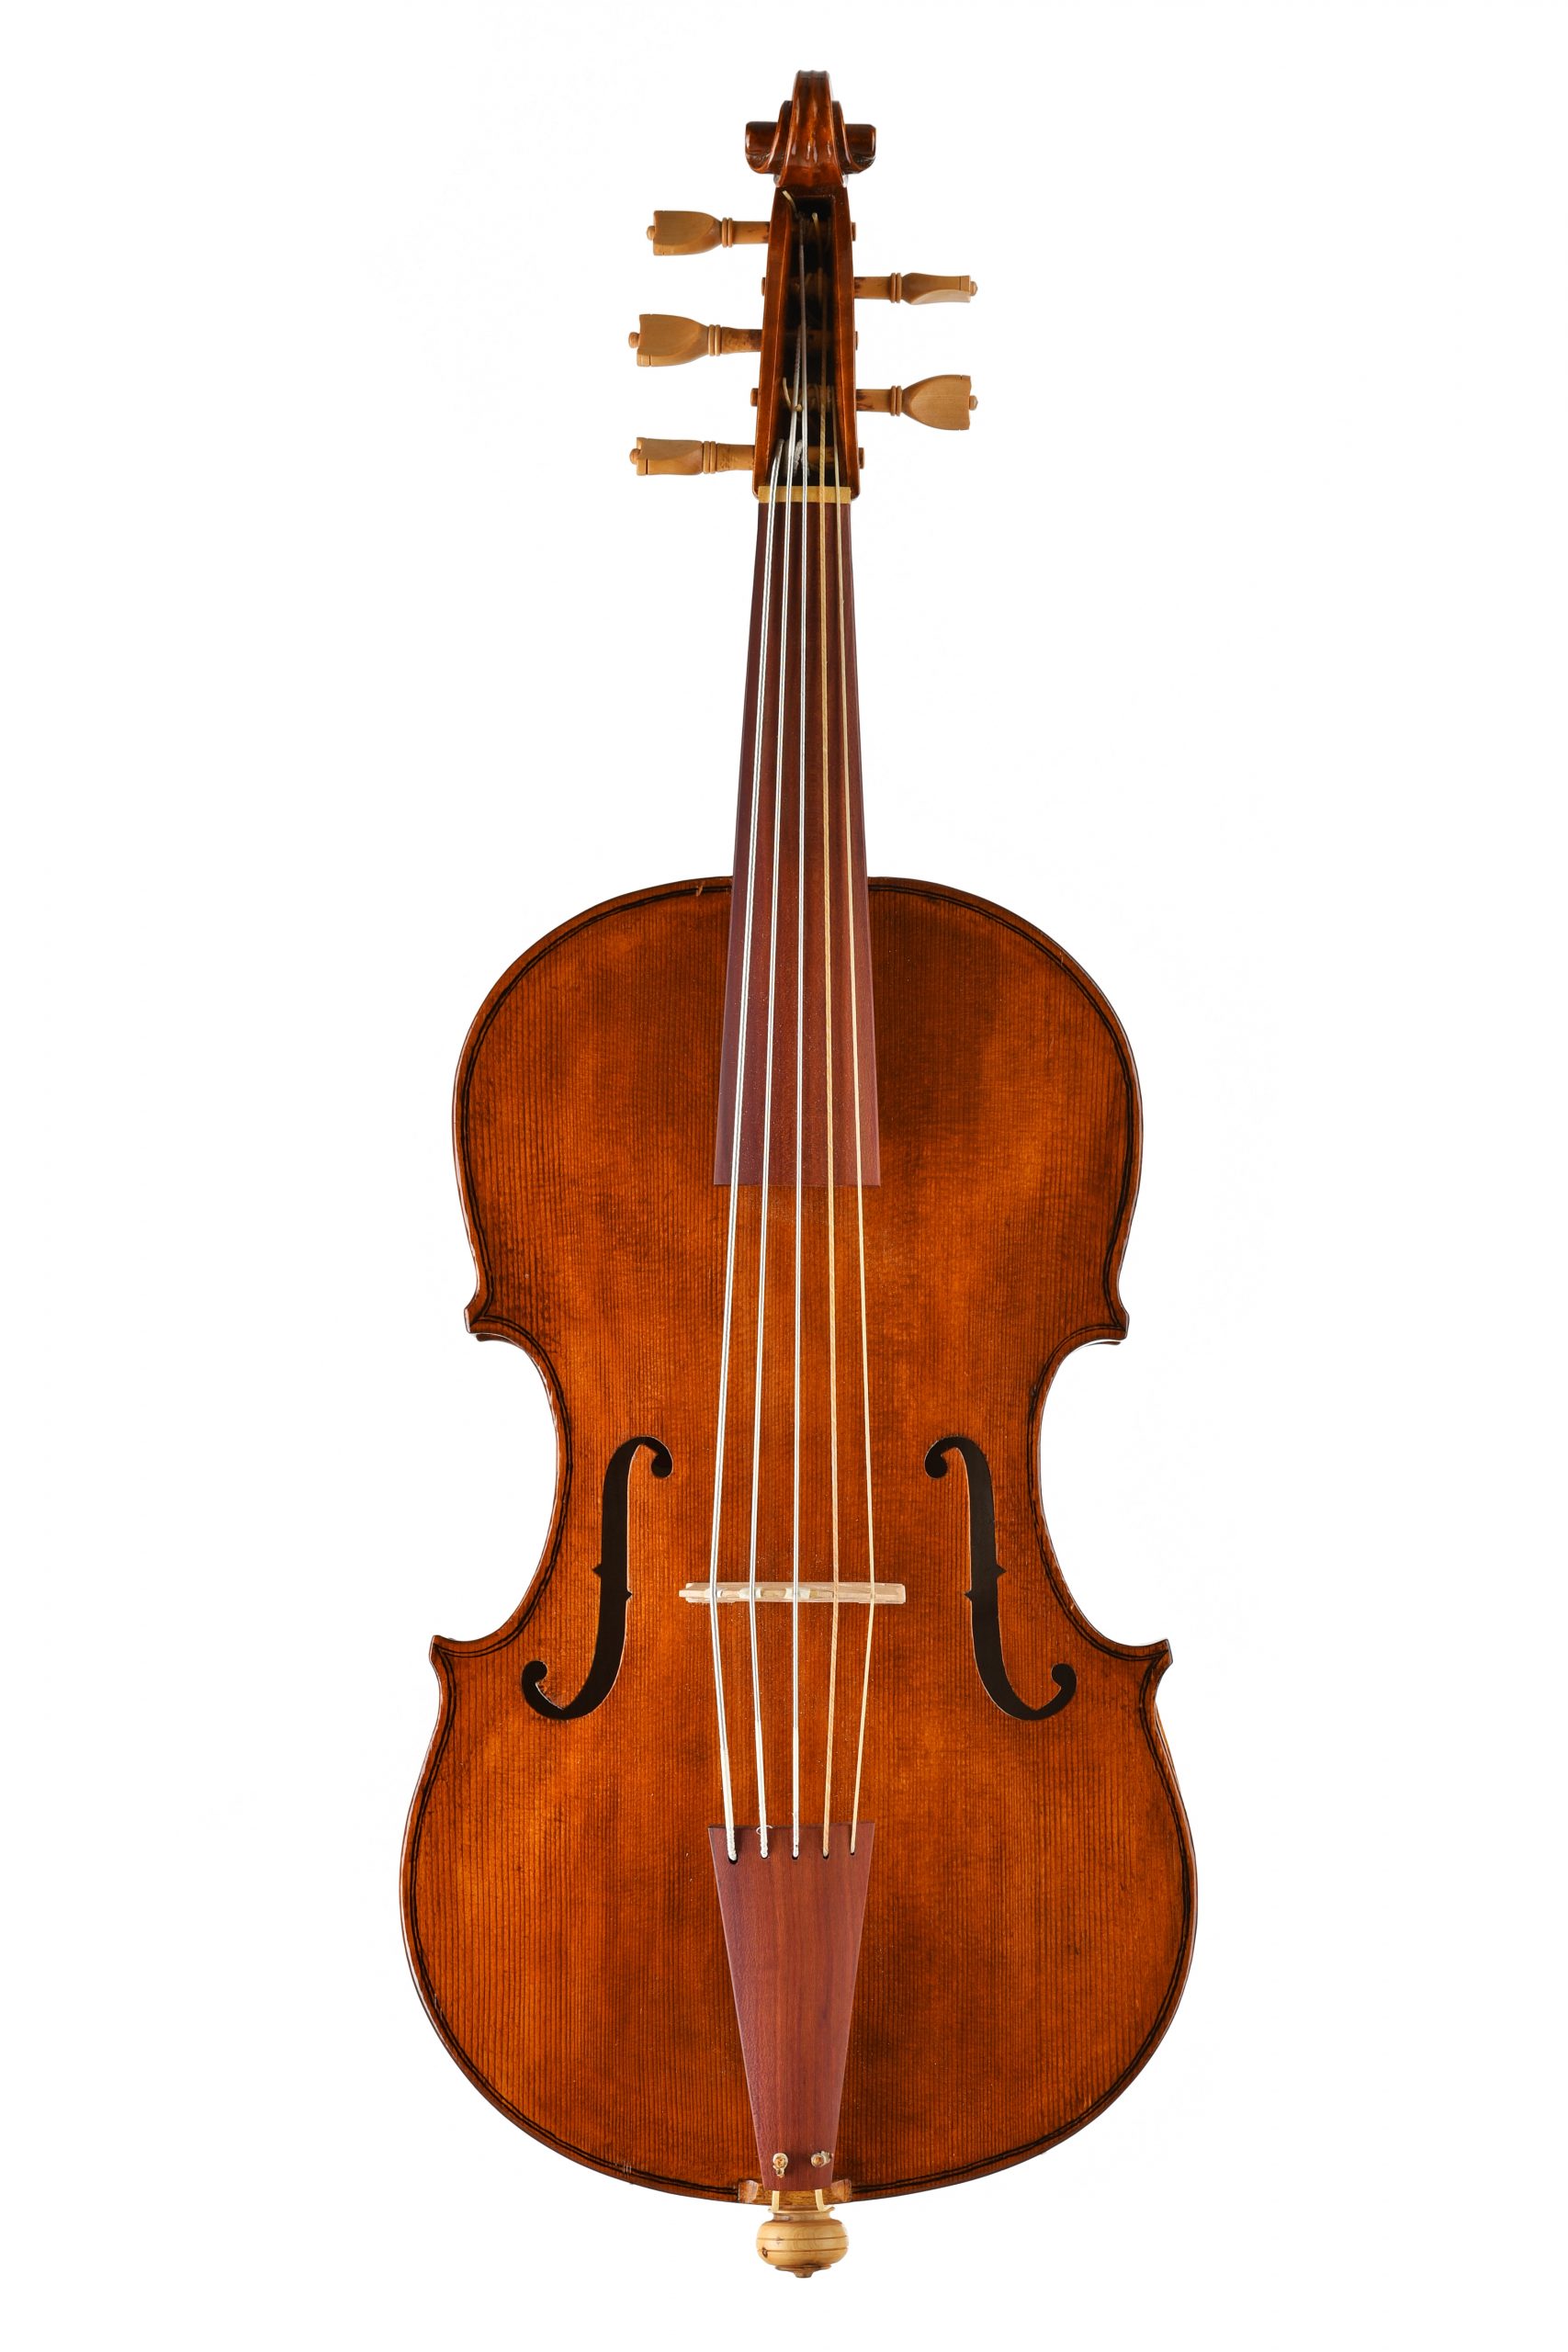 violoncello da spalla modello Wagner borstendorf Daniela Gaidano meltina